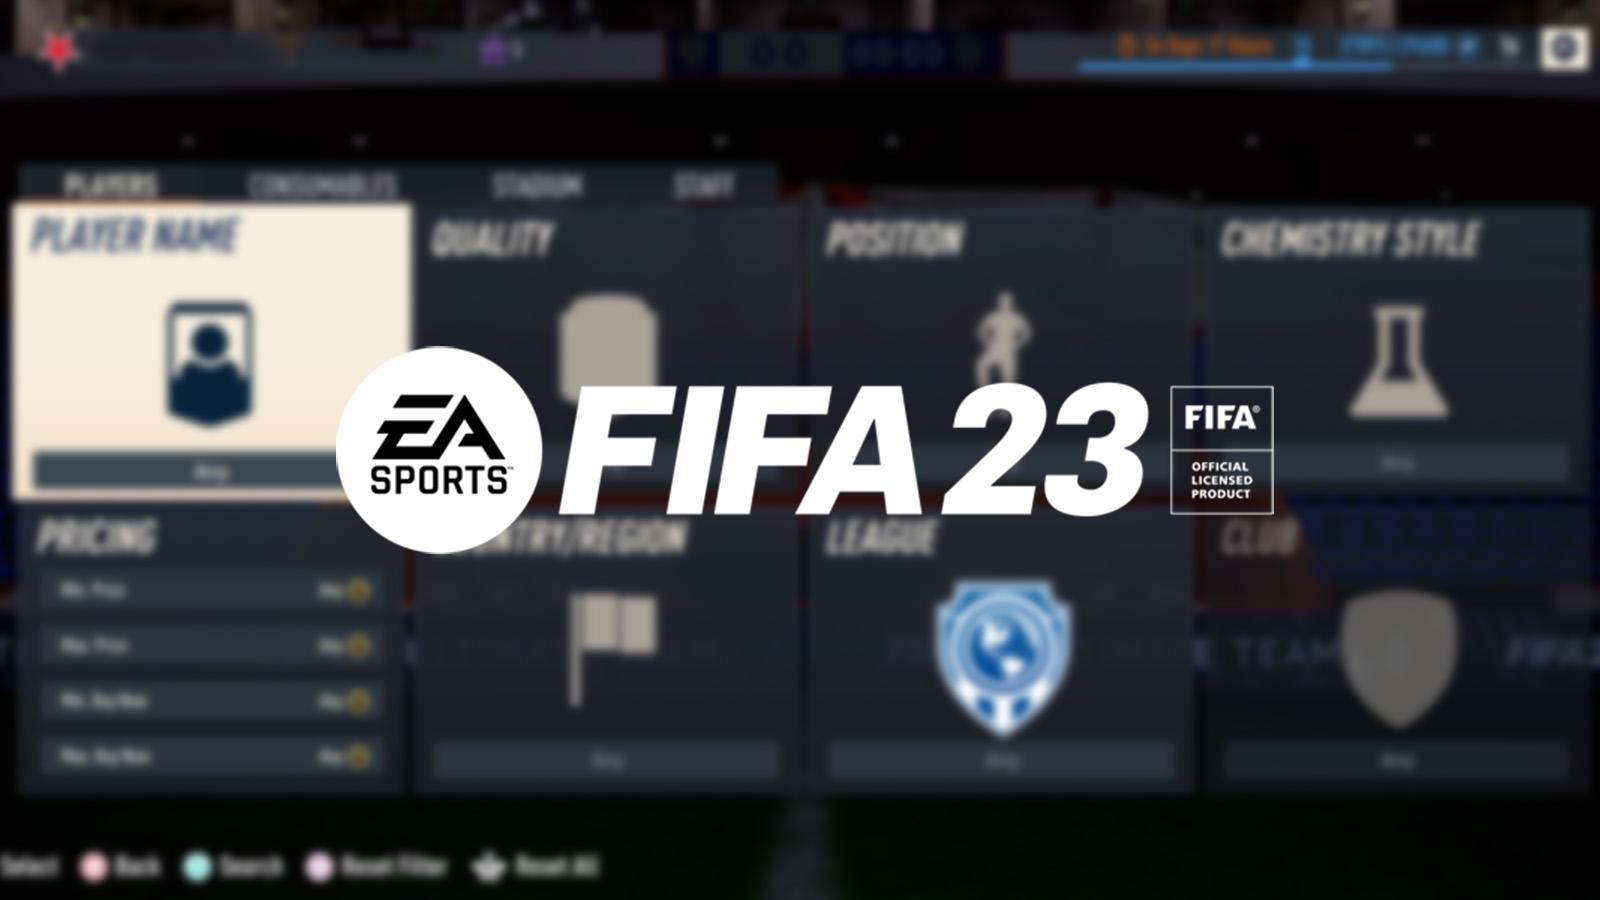 FIFA 23 logo on FUT market background